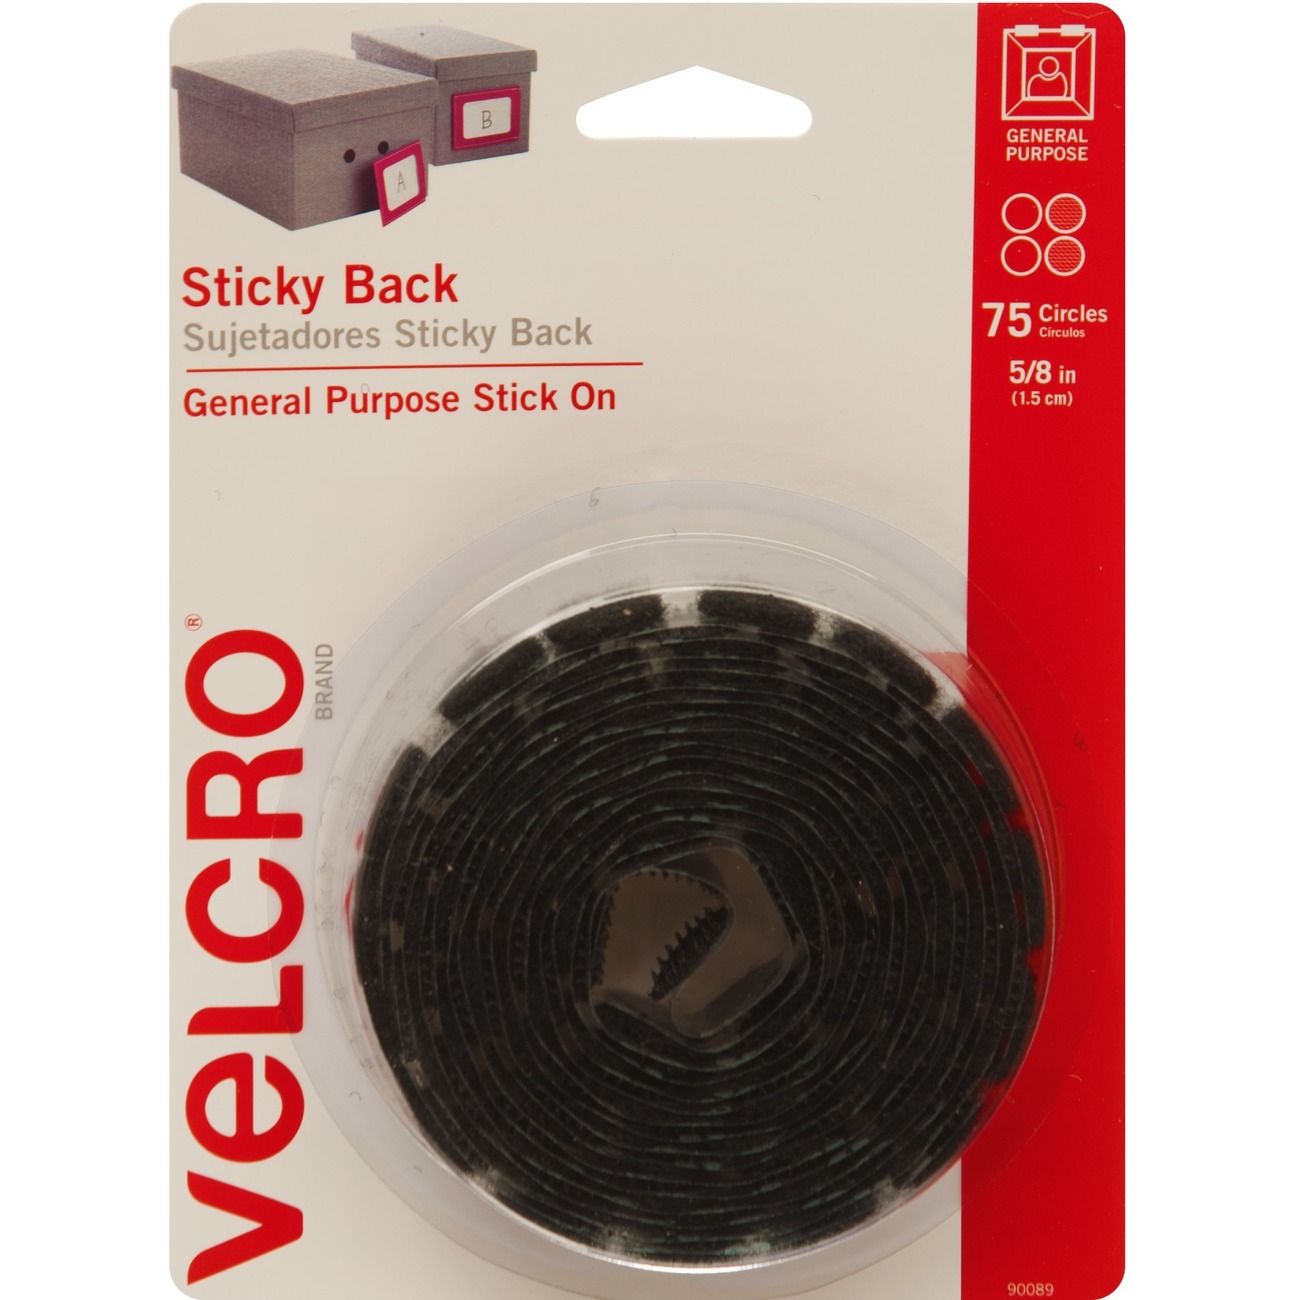  VELCRO Brand Sticky Back for Fabrics, 10 Ft Bulk Roll